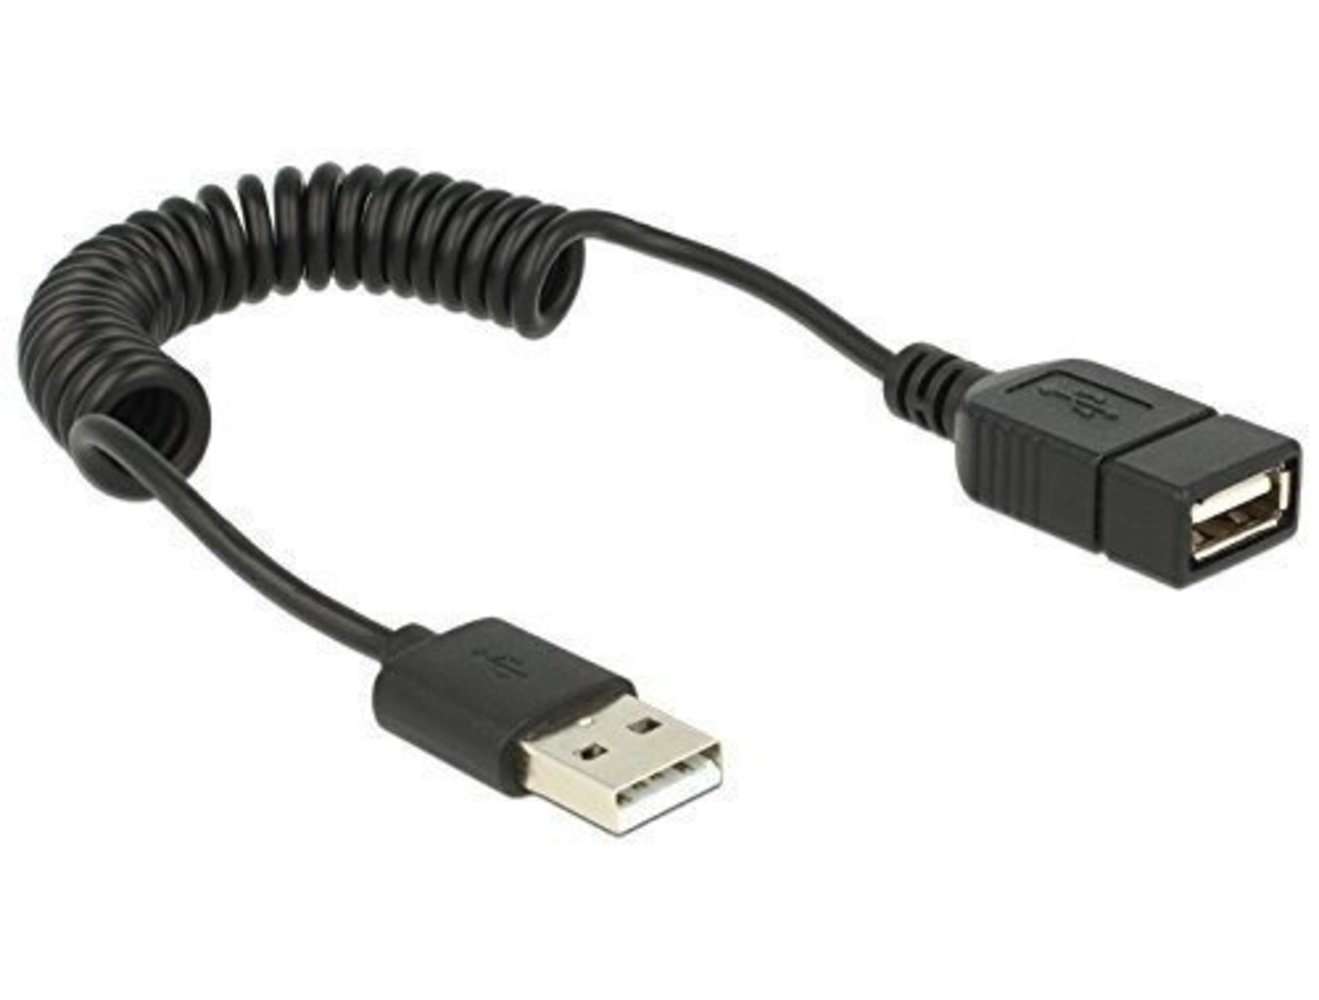 Delock Kabel USB 2.0 A Stecker auf USB 2.0 A Buchse Verlängerung - Spiralkabel mit hoher Qualität und Langlebigkeit